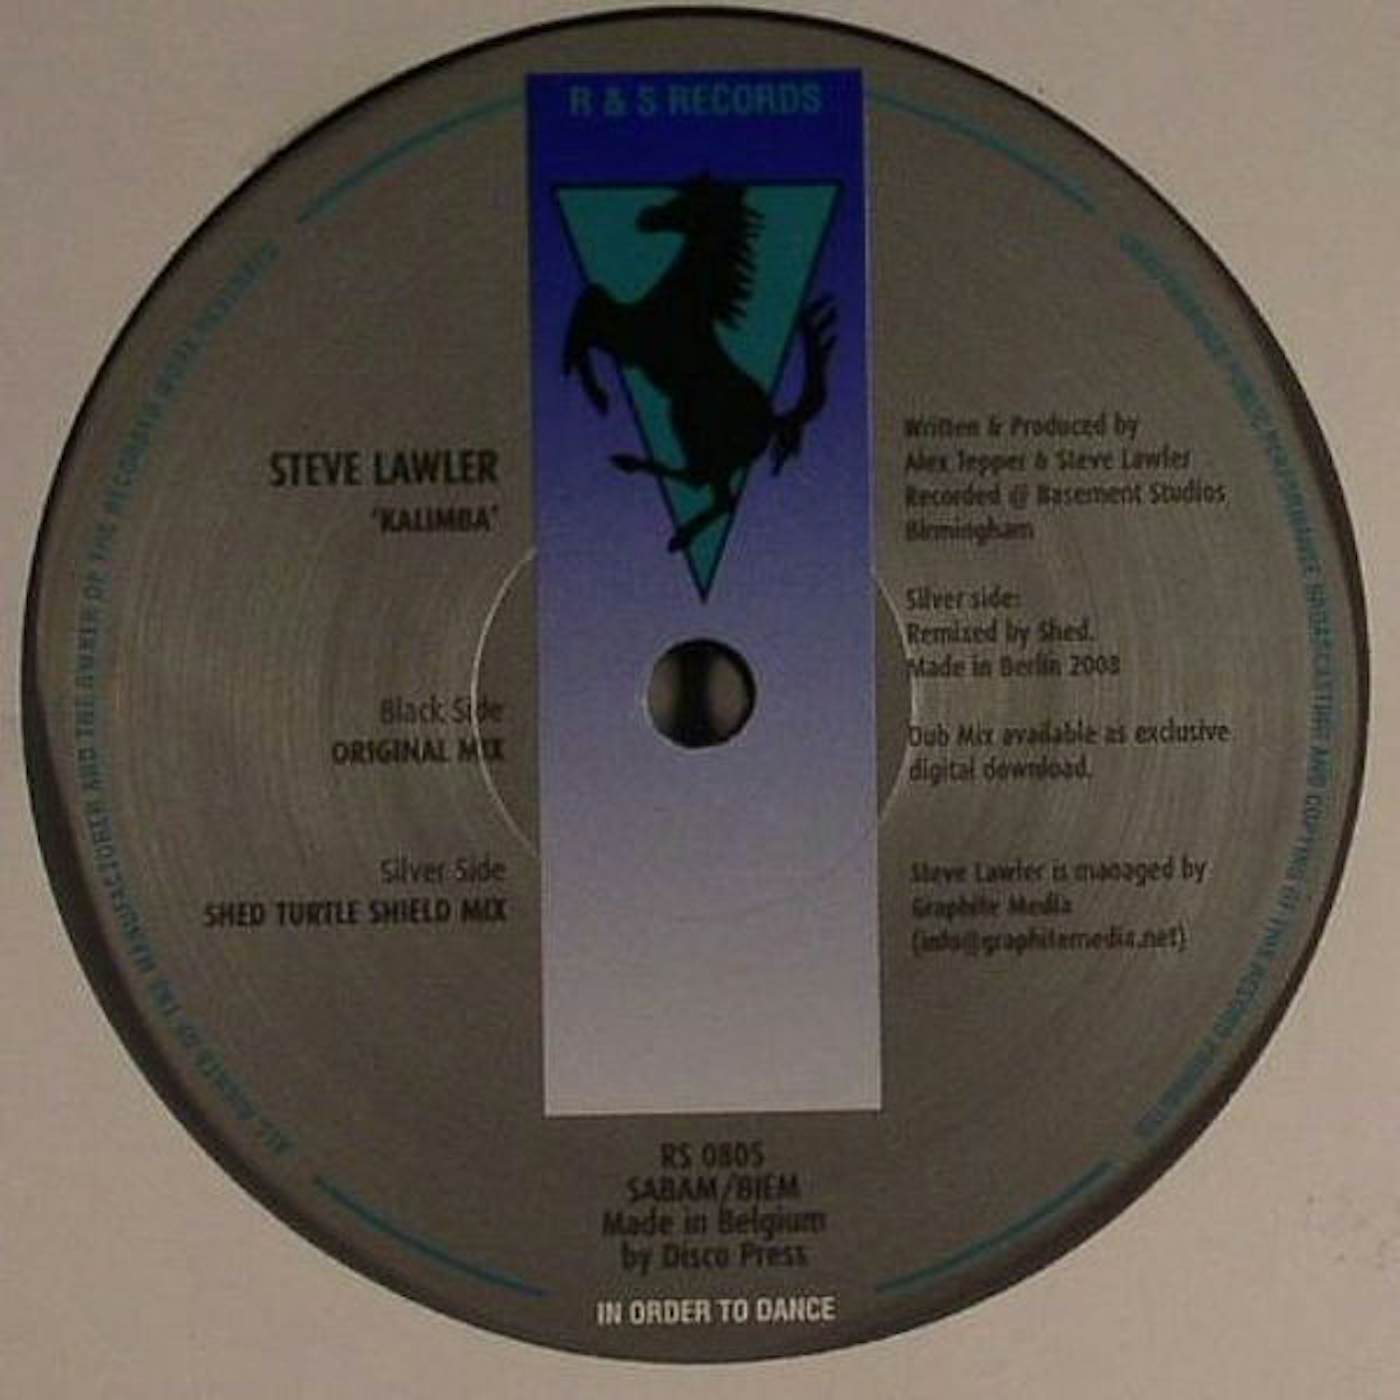 Steve Lawler KALIMBA (UK) (Vinyl)